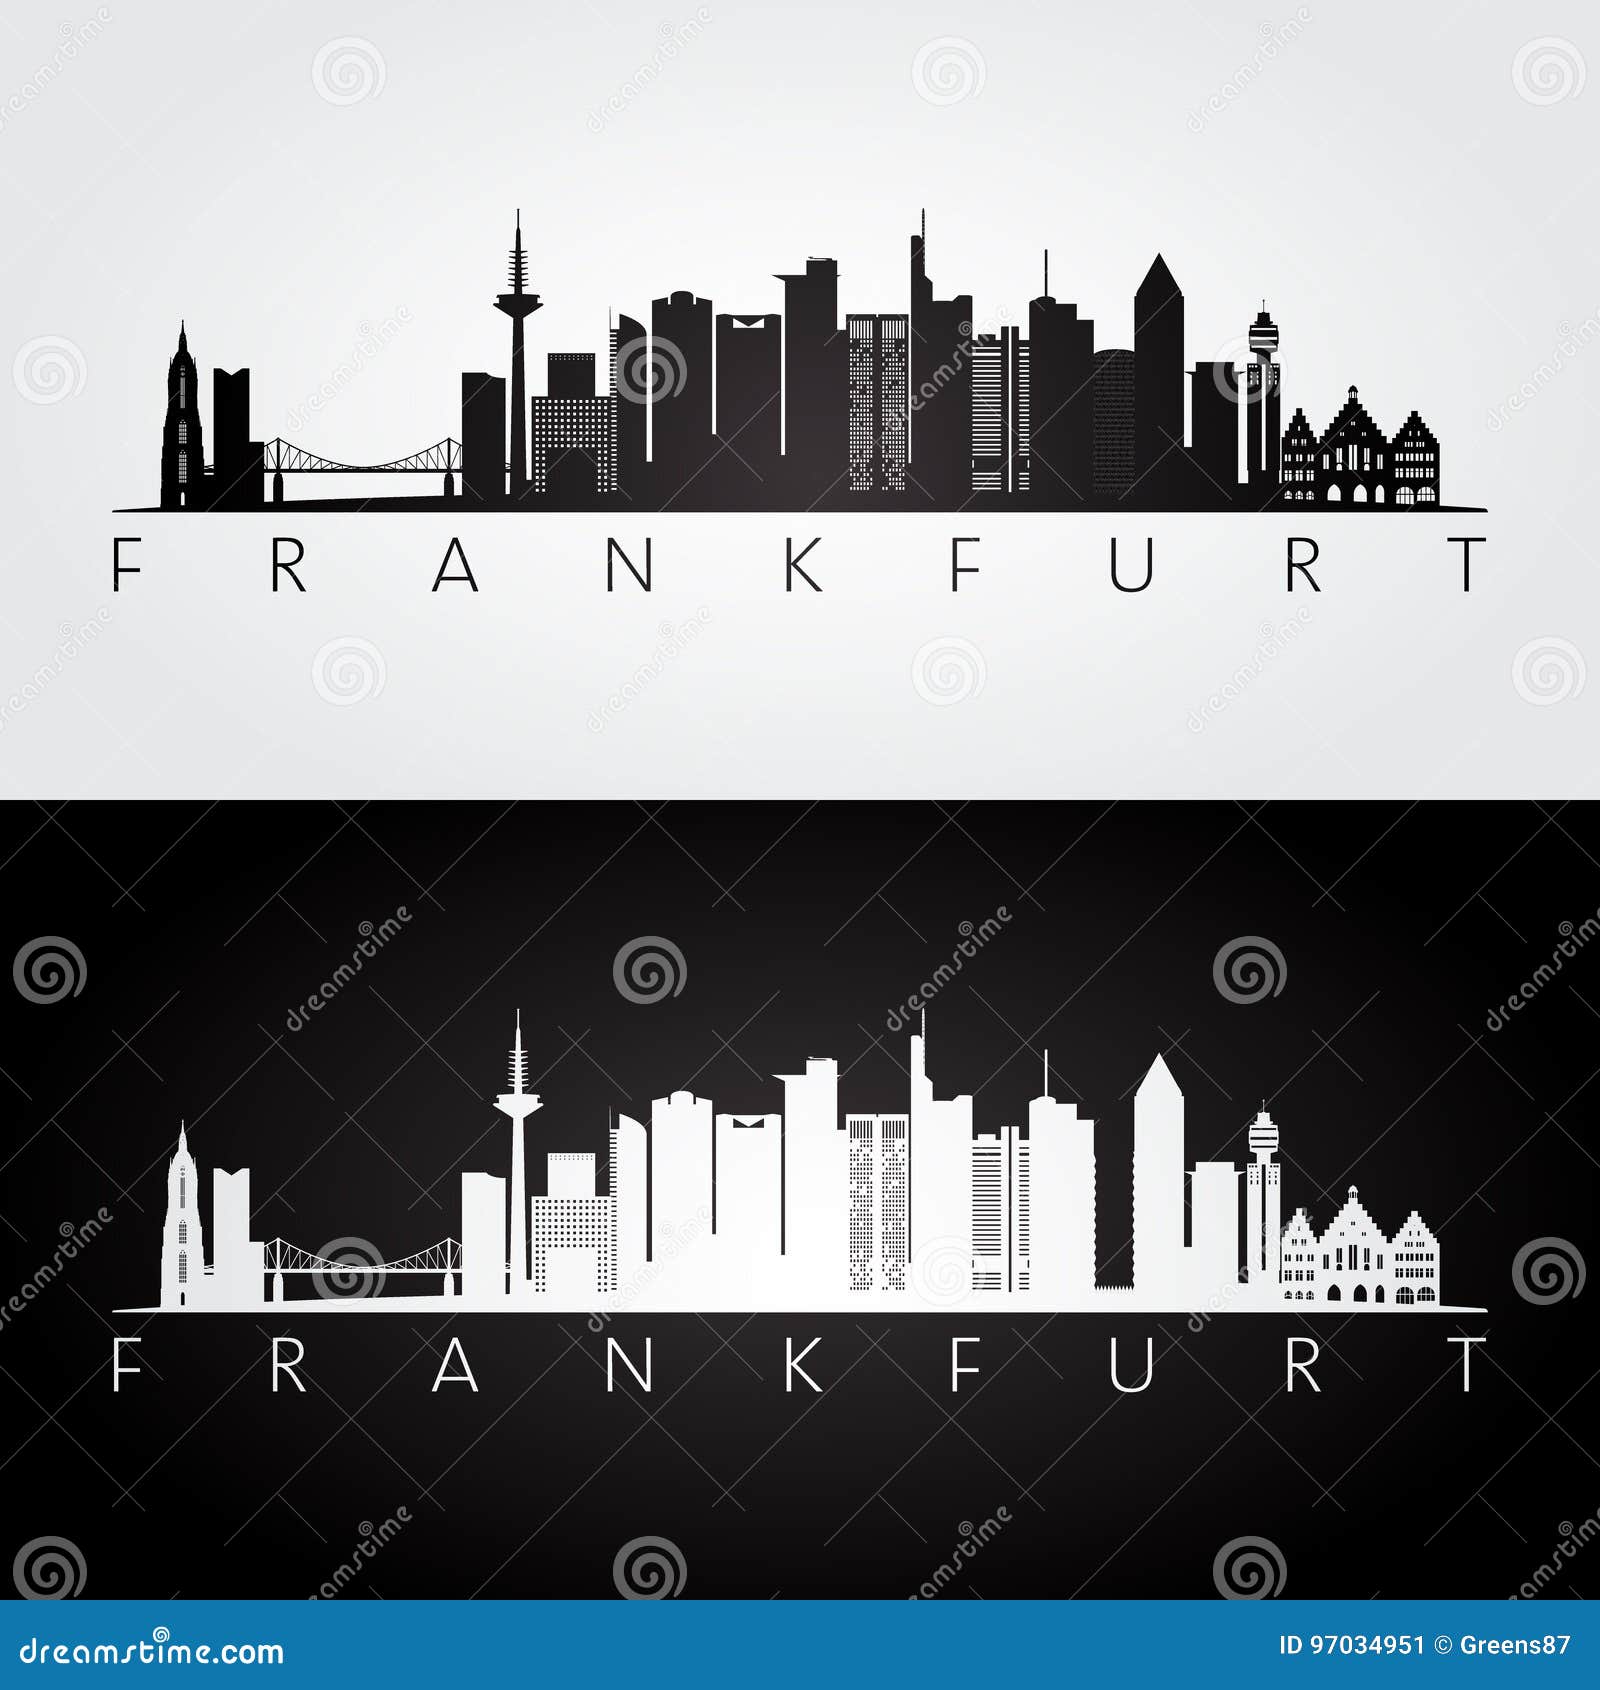 frankfurt skyline and landmarks silhouette